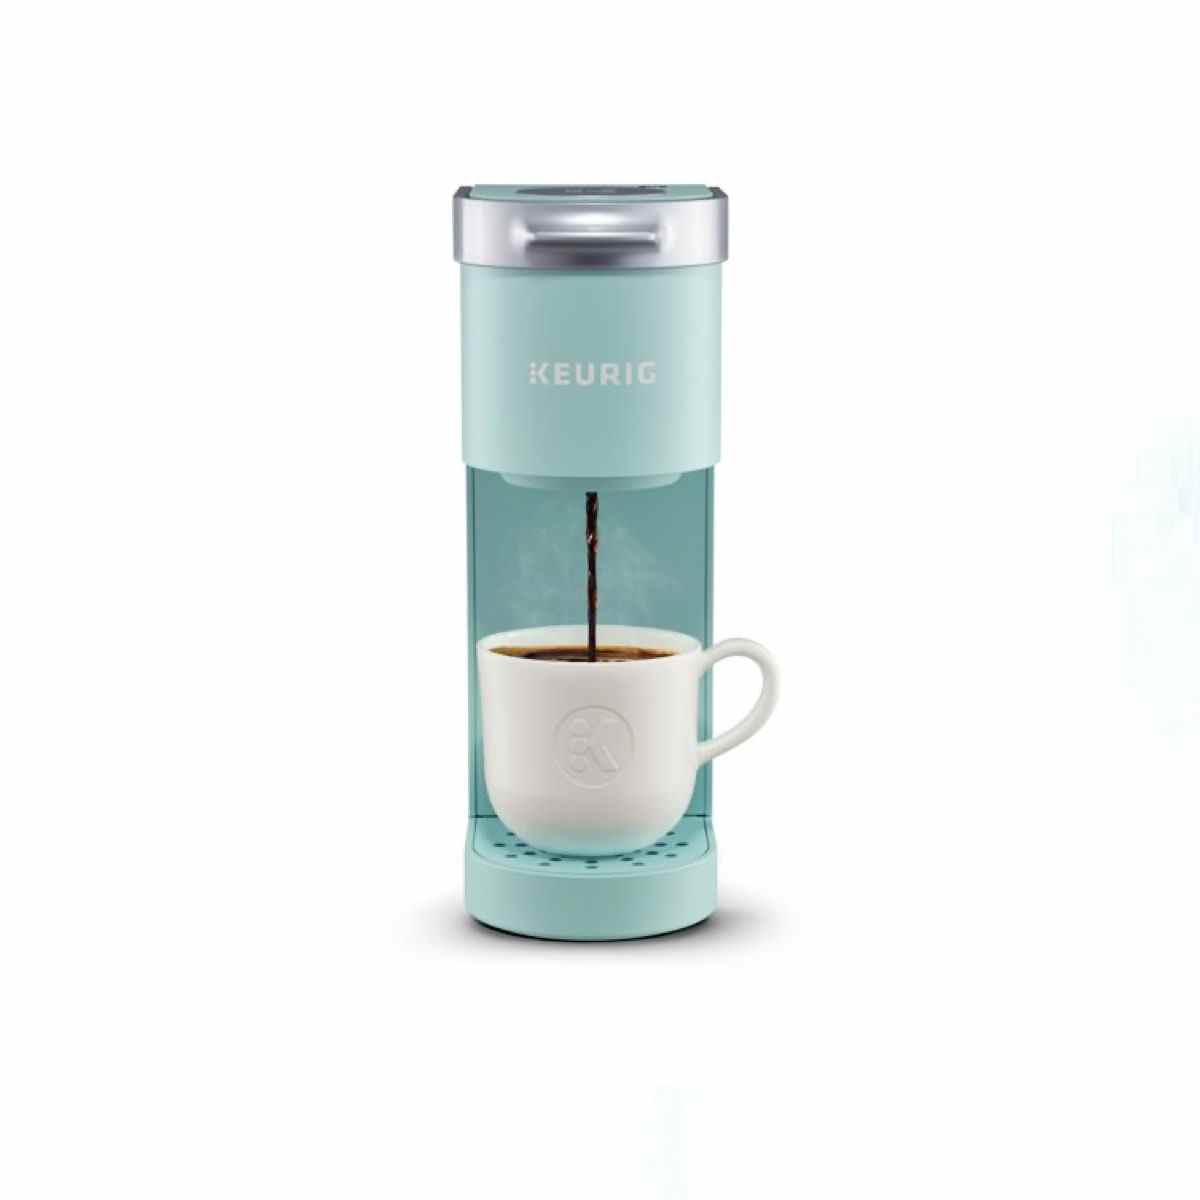 Blaue Keurig K-Mini Single Serve Kaffeemaschine auf weißem Hintergrund